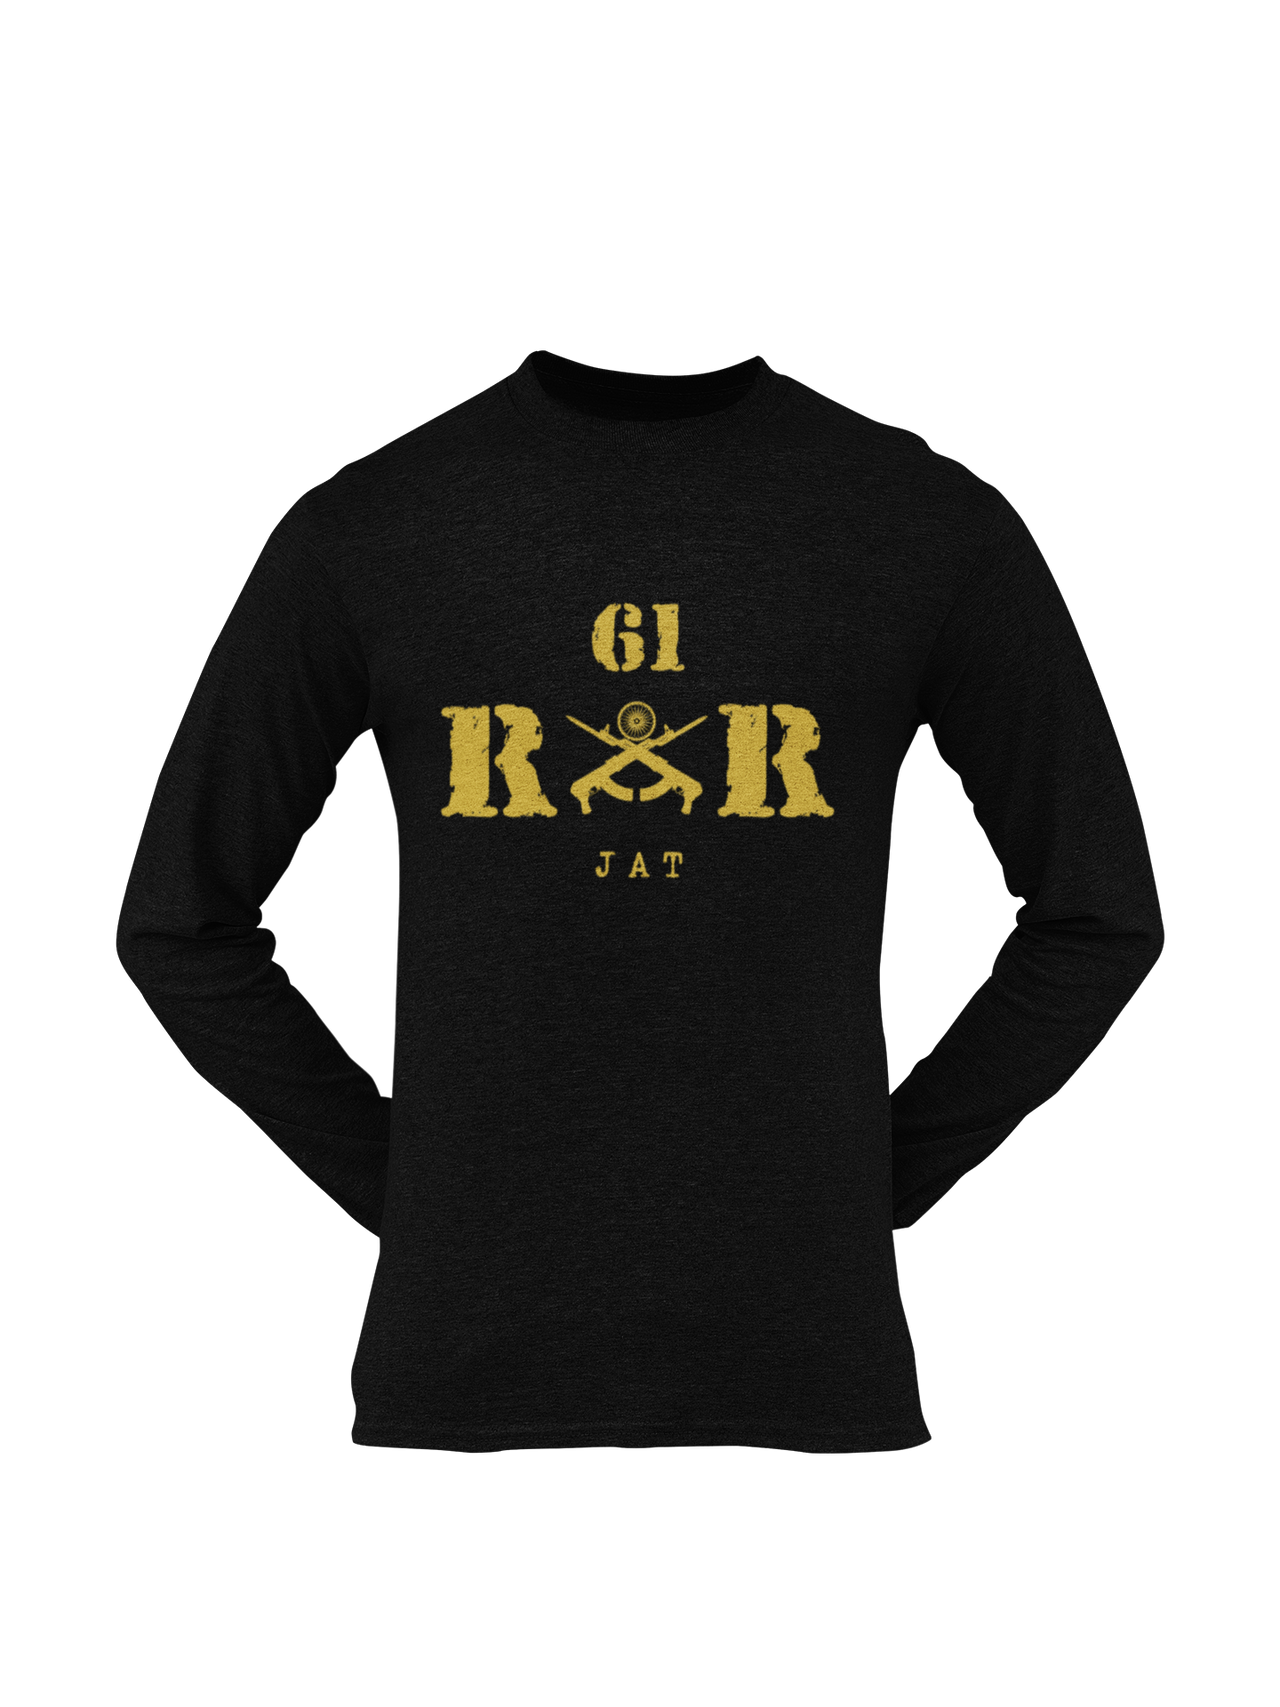 Rashtriya Rifles T-shirt - 61 RR Jat (Men)